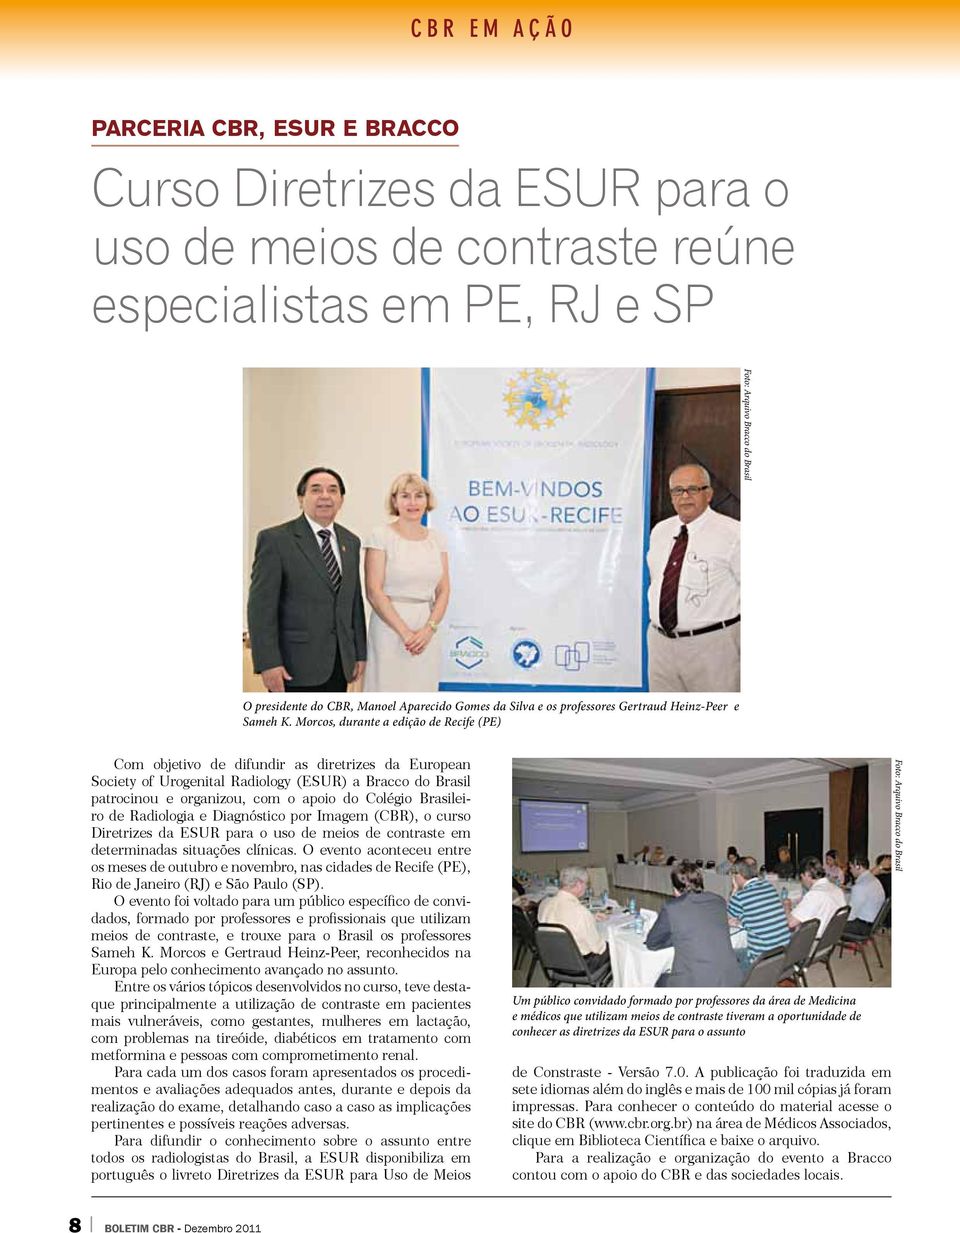 Morcos, durante a edição de Recife (PE) Com objetivo de difundir as diretrizes da European Society of Urogenital Radiology (ESUR) a Bracco do Brasil patrocinou e organizou, com o apoio do Colégio